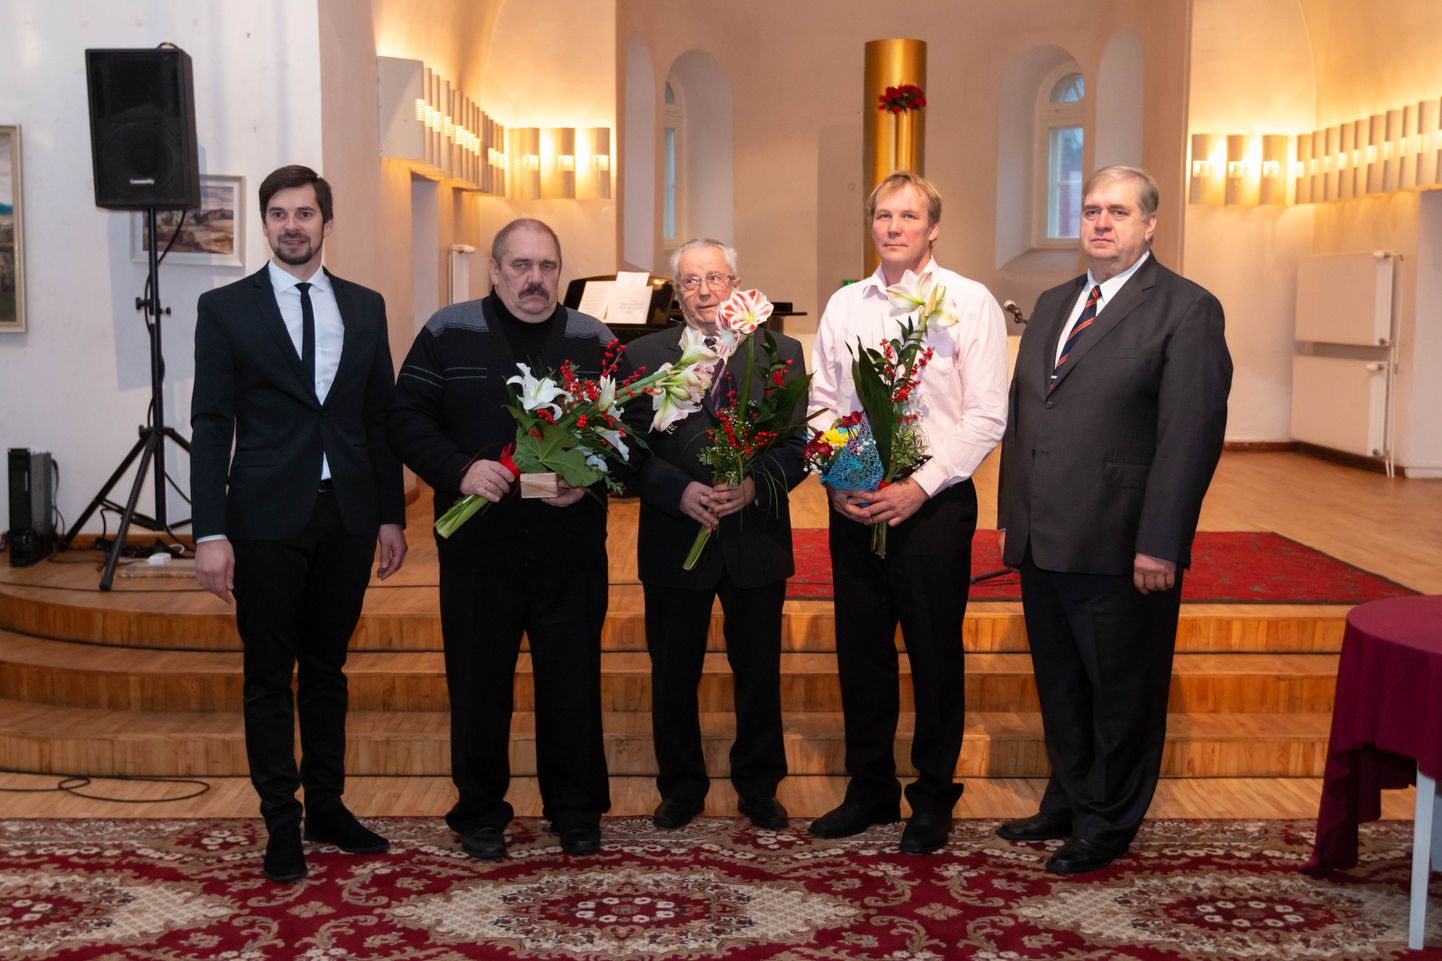 Vallavanem Maido Ruusmann, Tõrva valla aasta isa 2018 Urmas Kivit koos nominentide Väino Vallandi ja Marko Ilissoniga ning vallavolikogu esimees Enn Mihailov.